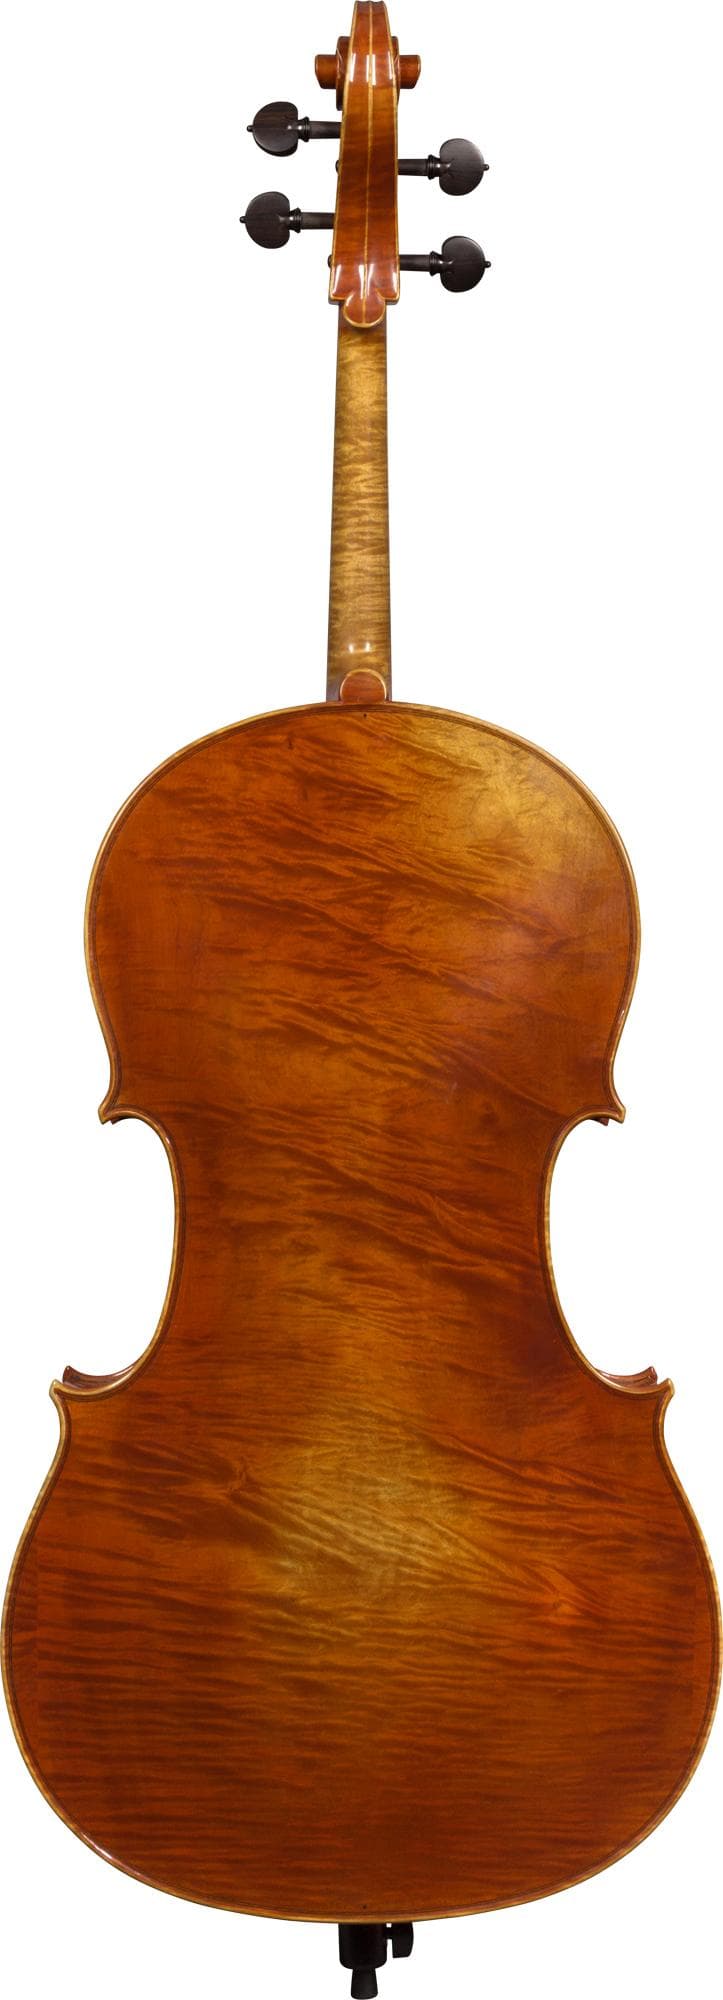 Giorgio Grisales "Garimberti" Cello, Cremona, 2017